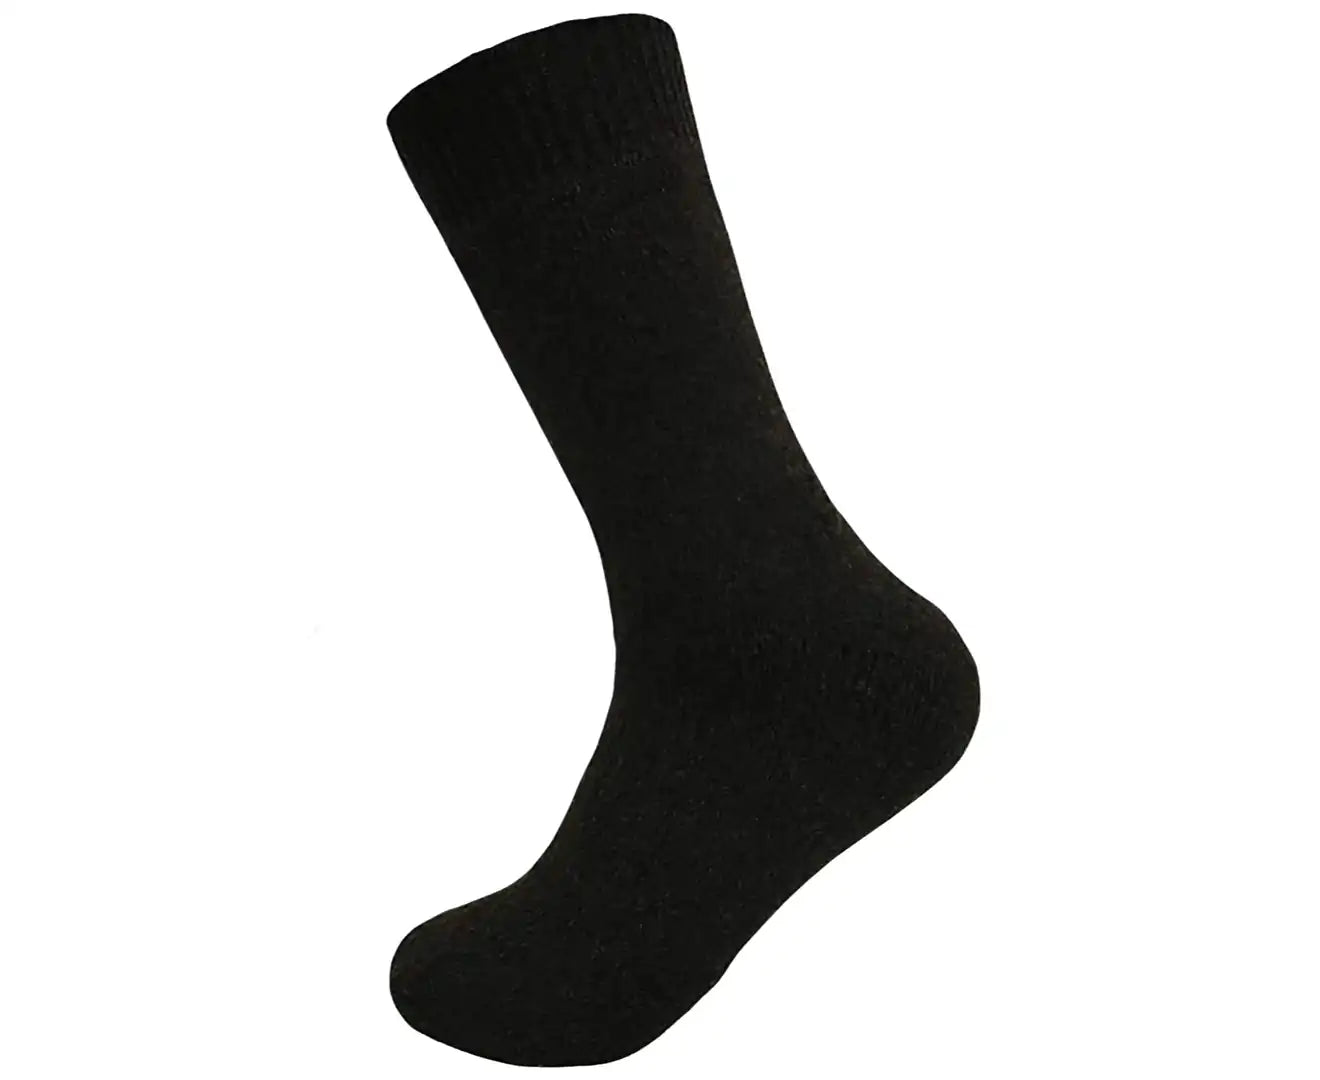 Merino Wool Men'S Loose Top Thermal Socks Diabetic Comfort Circulation - 1 Pair - Black